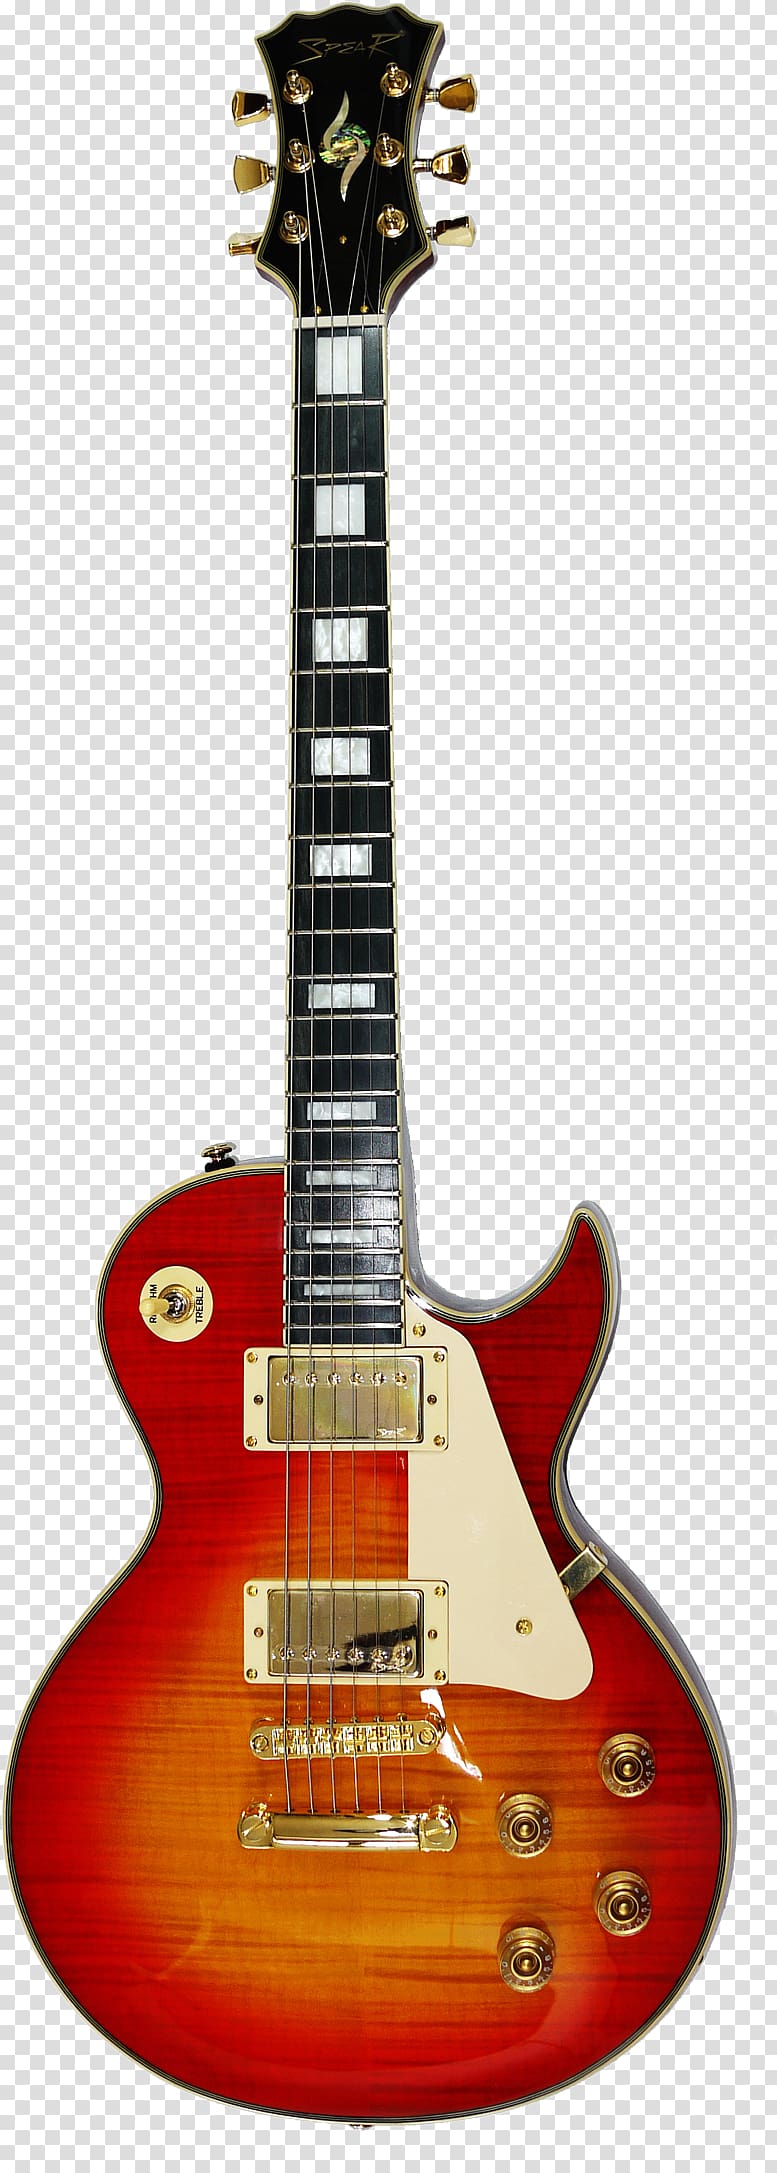 Gibson Les Paul Epiphone Les Paul Standard PlusTop Pro Guitar, guitar transparent background PNG clipart